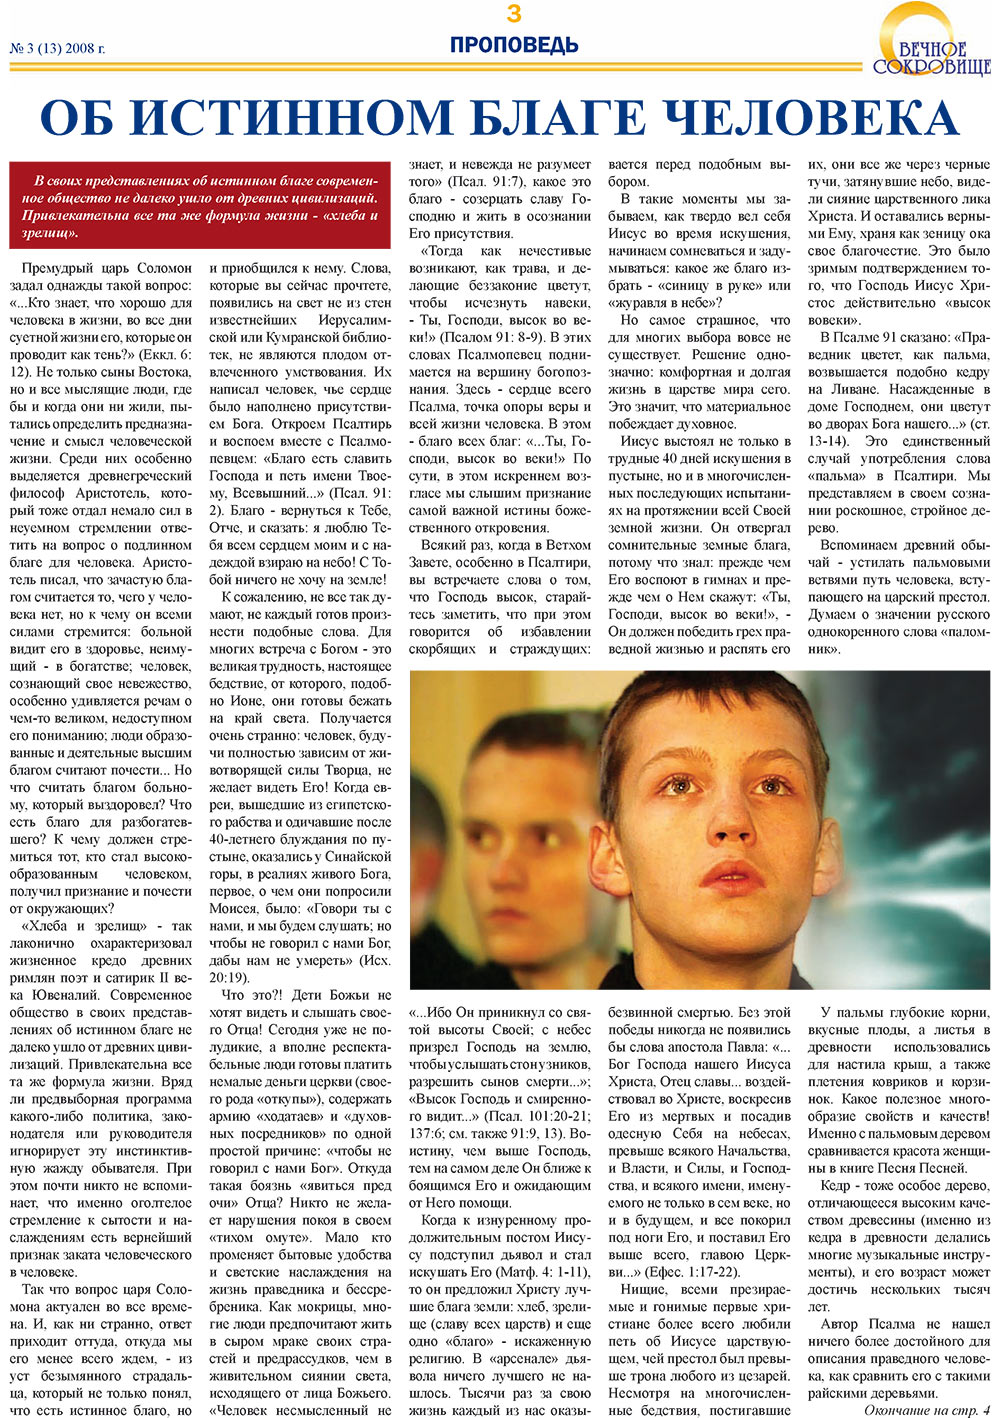 Вечное сокровище, газета. 2008 №3 стр.3